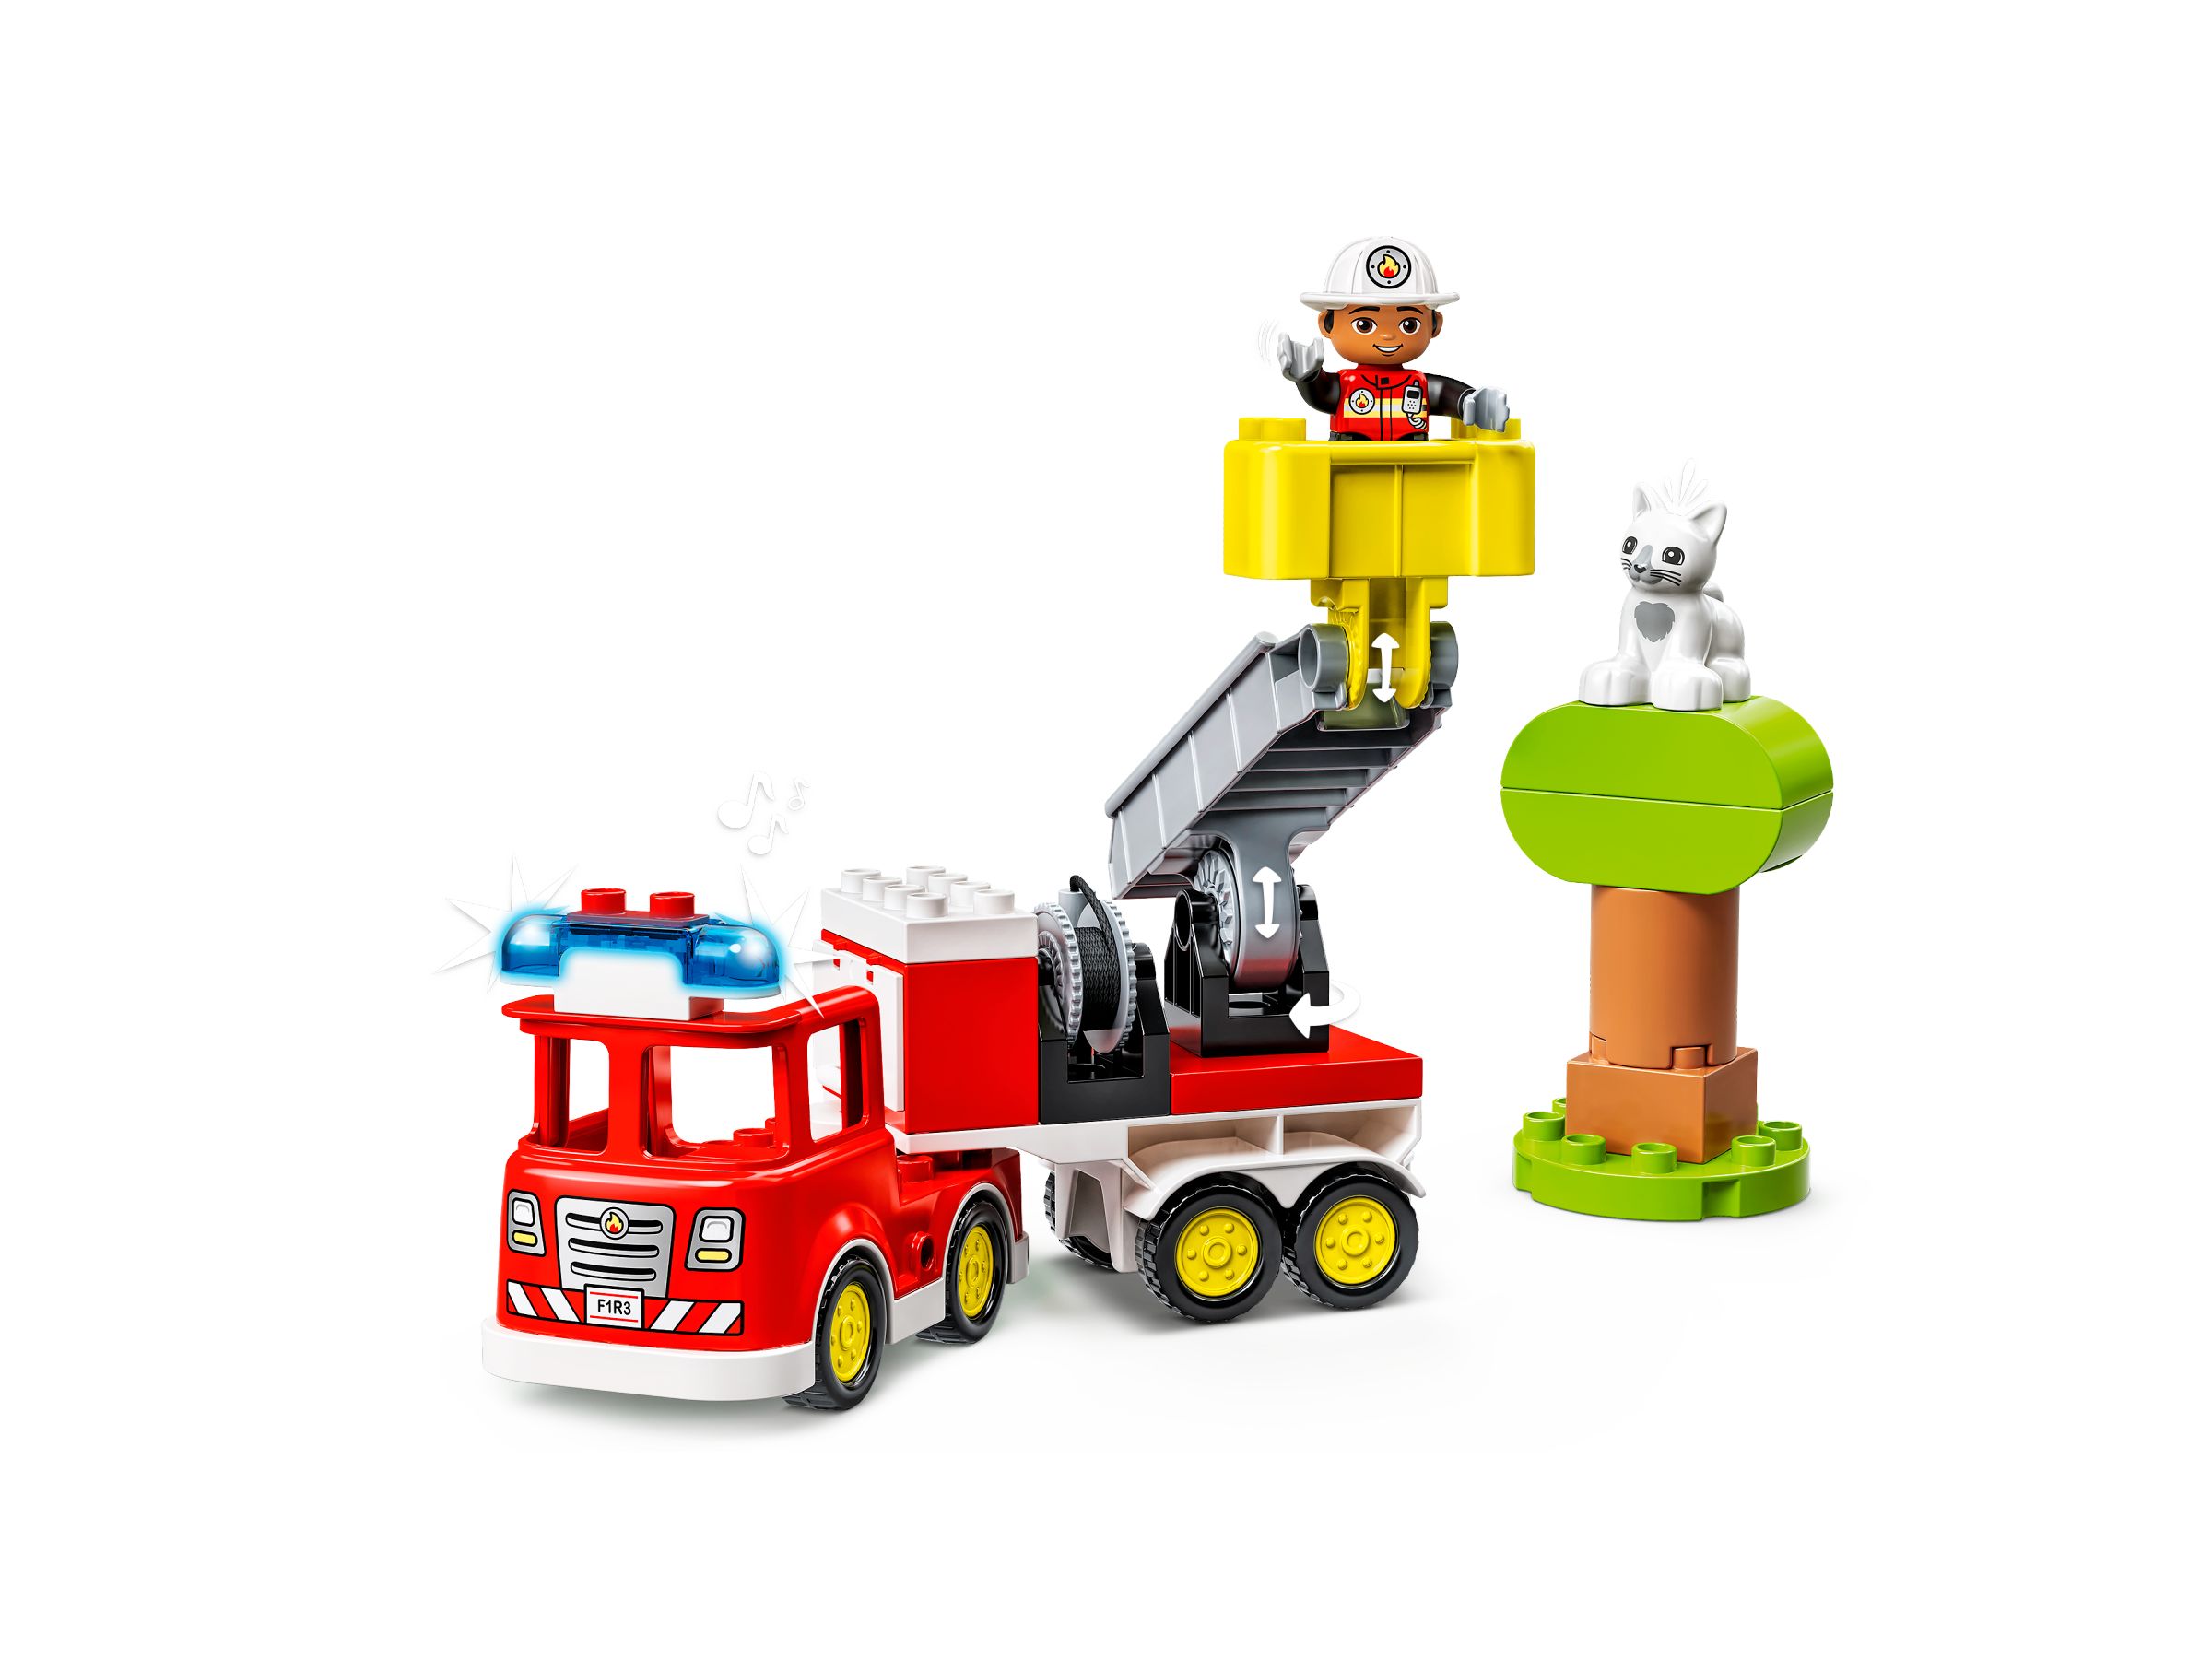 LEGO Duplo 10969 Feuerwehrauto LEGO_10969_alt2.jpg